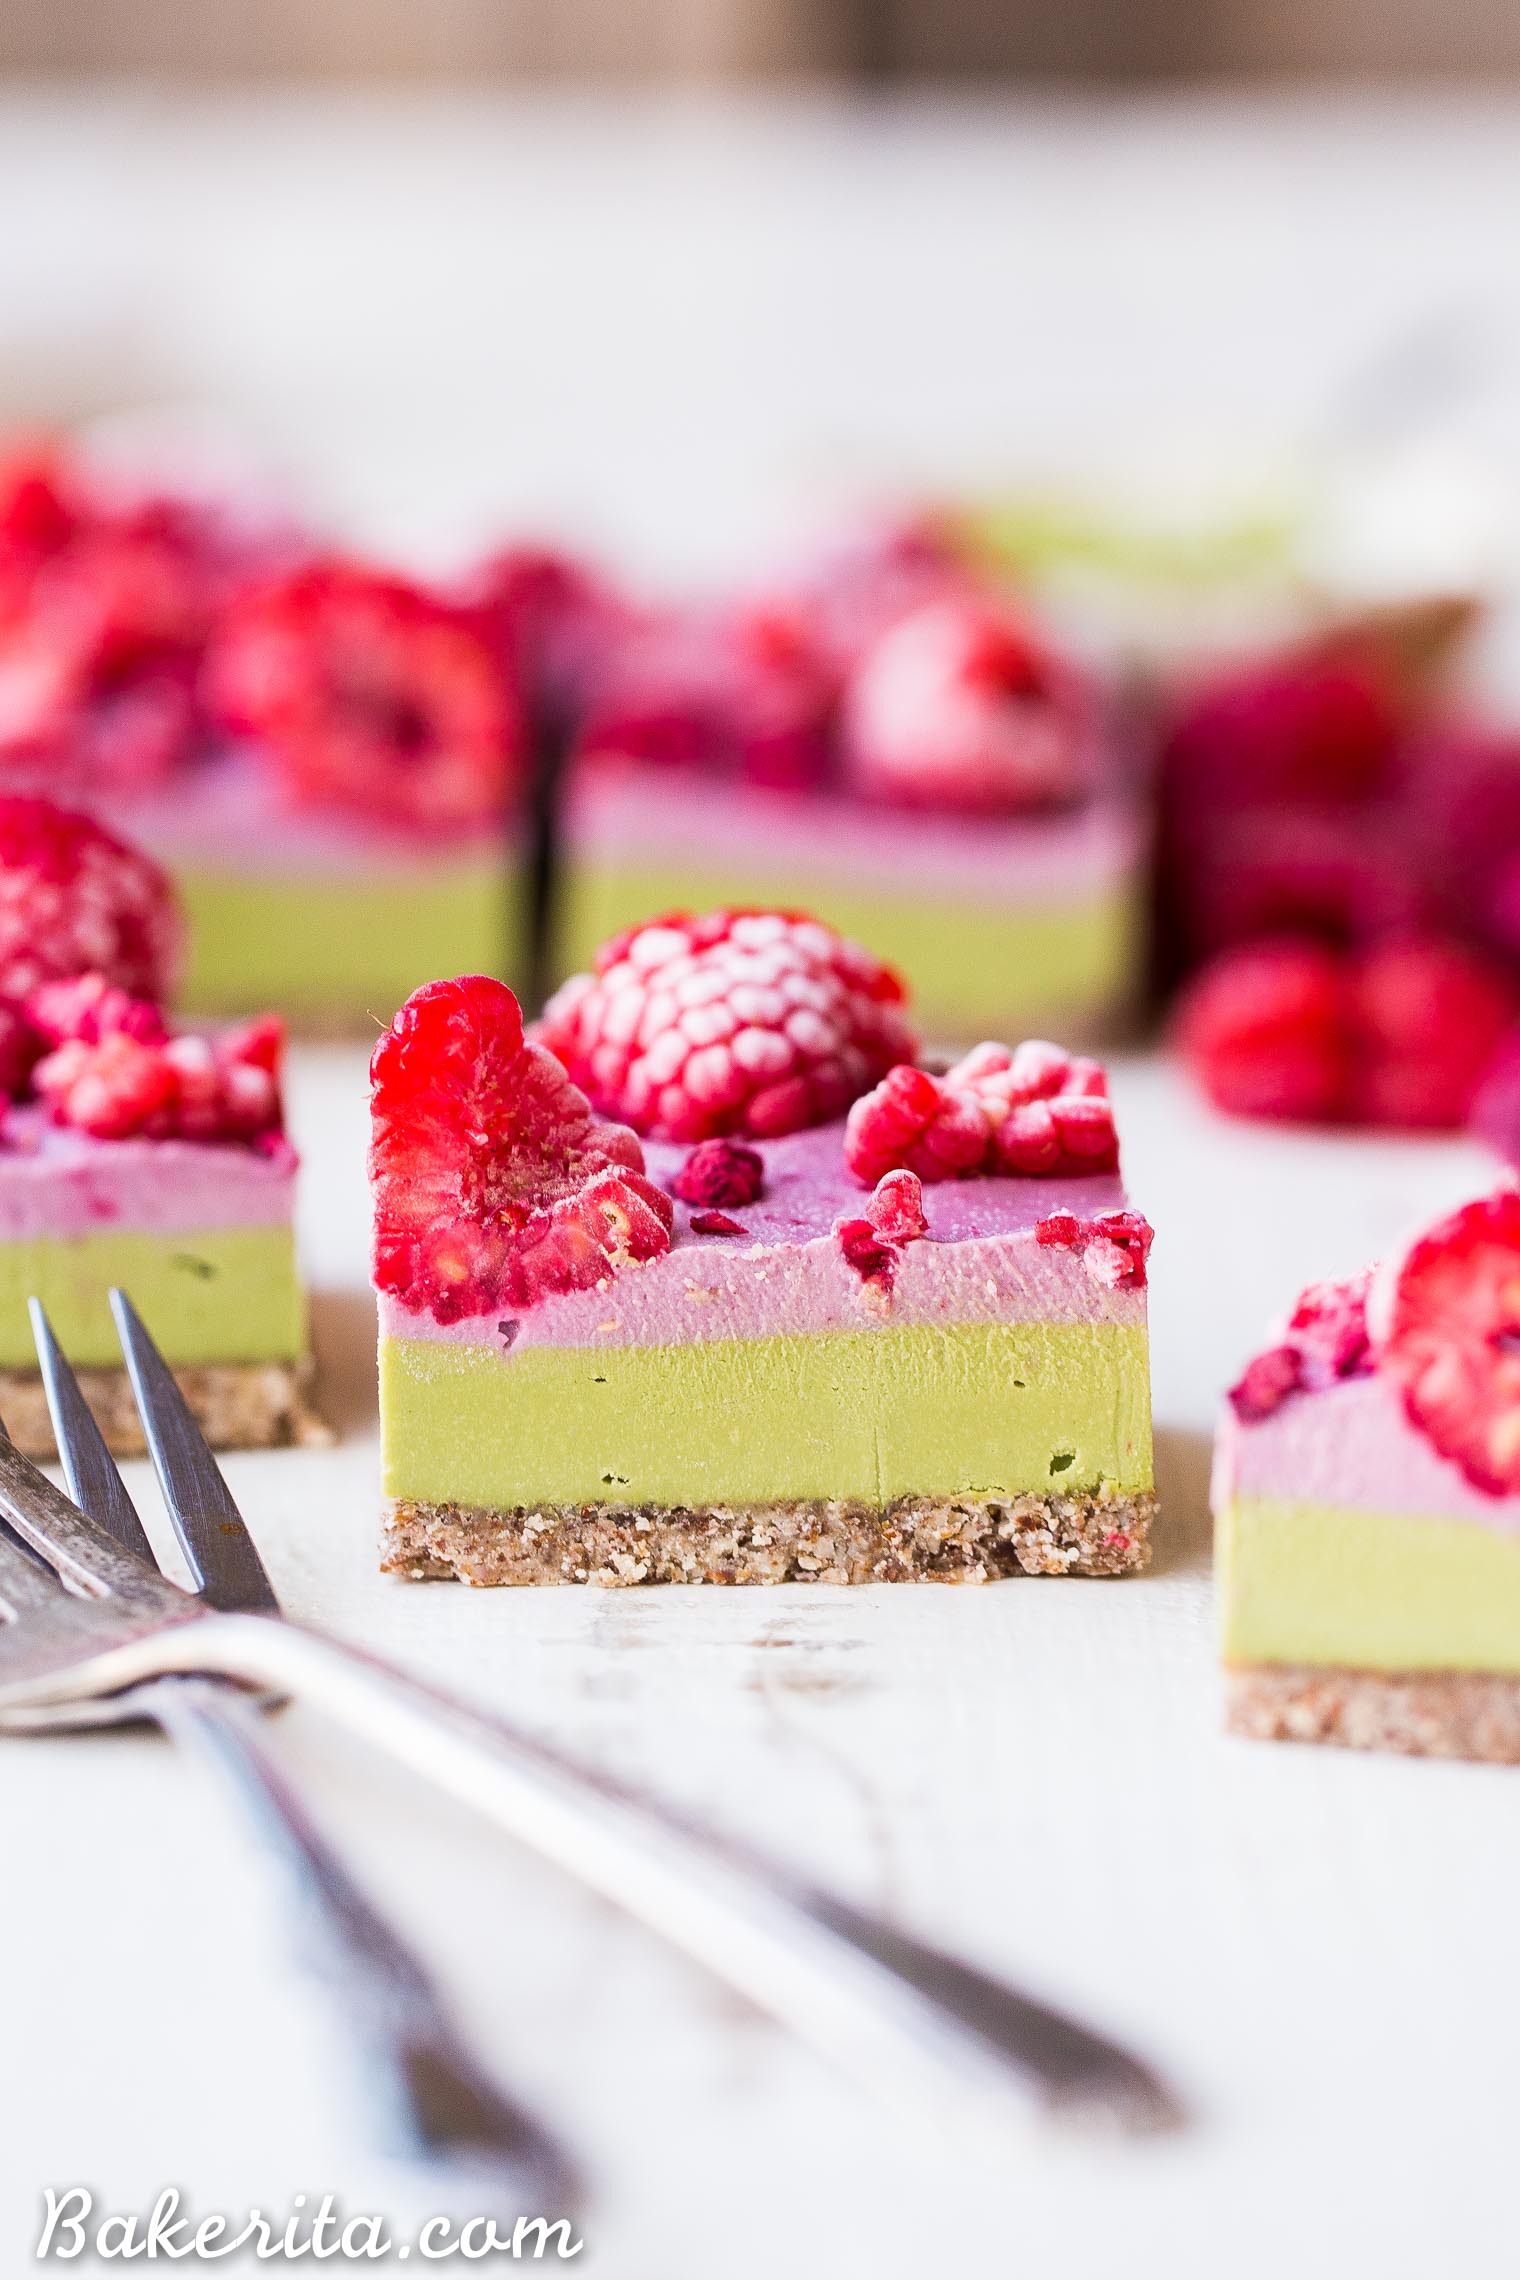 Layered Raspberry Matcha Bars - Gluten Free, Paleo, Refined Sugar Free, Dairy Free & Vegan